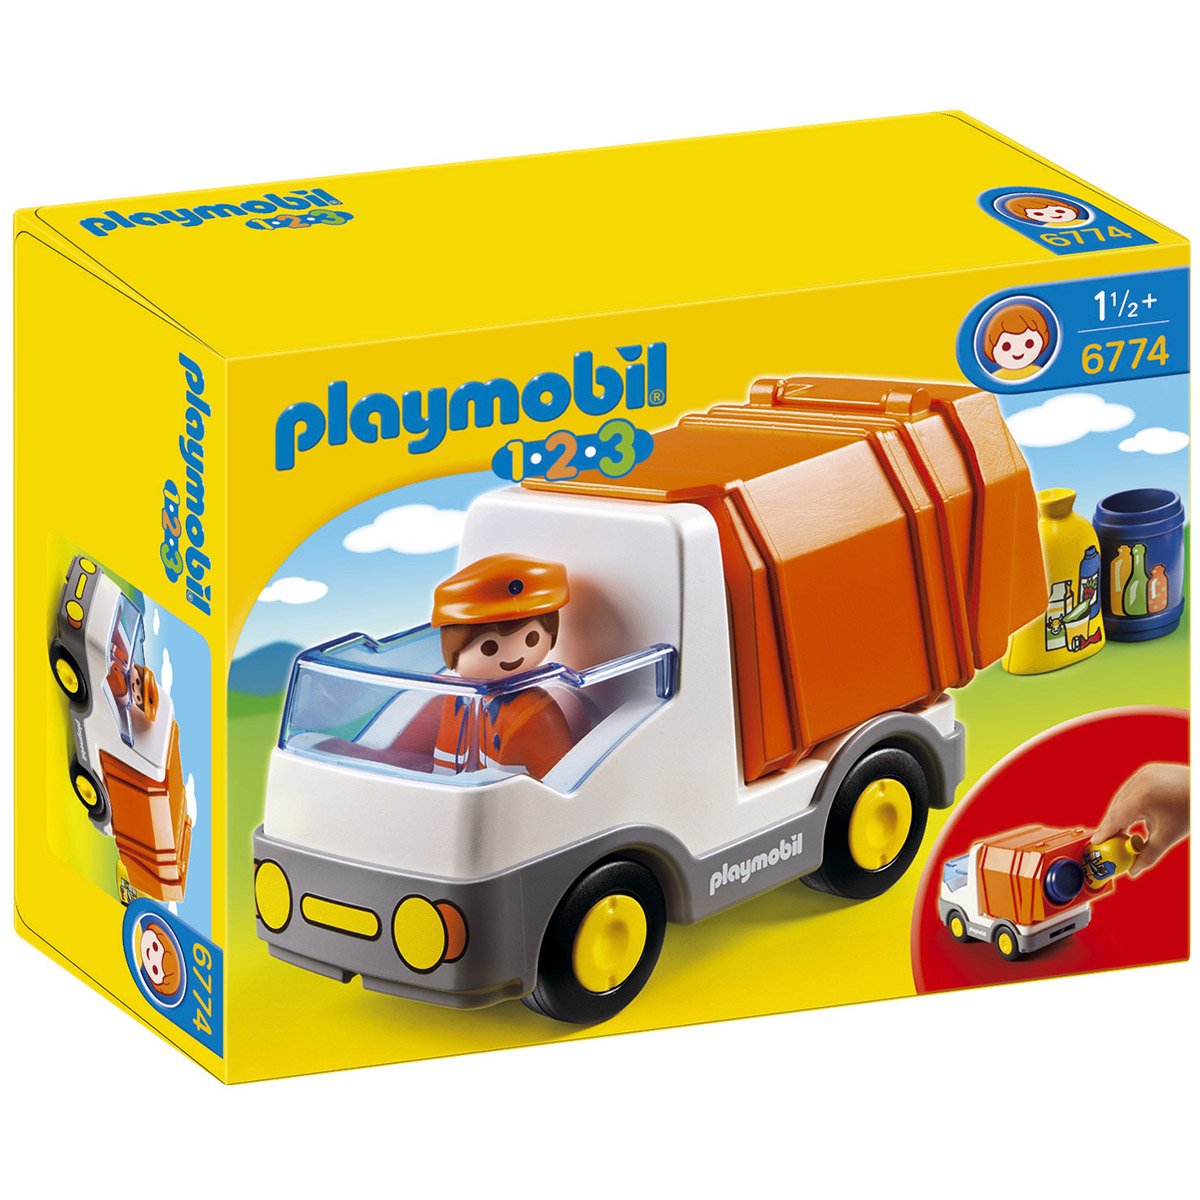 Playmobil 123 Enfants Voiture en Bas Âge Bébé Transport Jouet Jeux